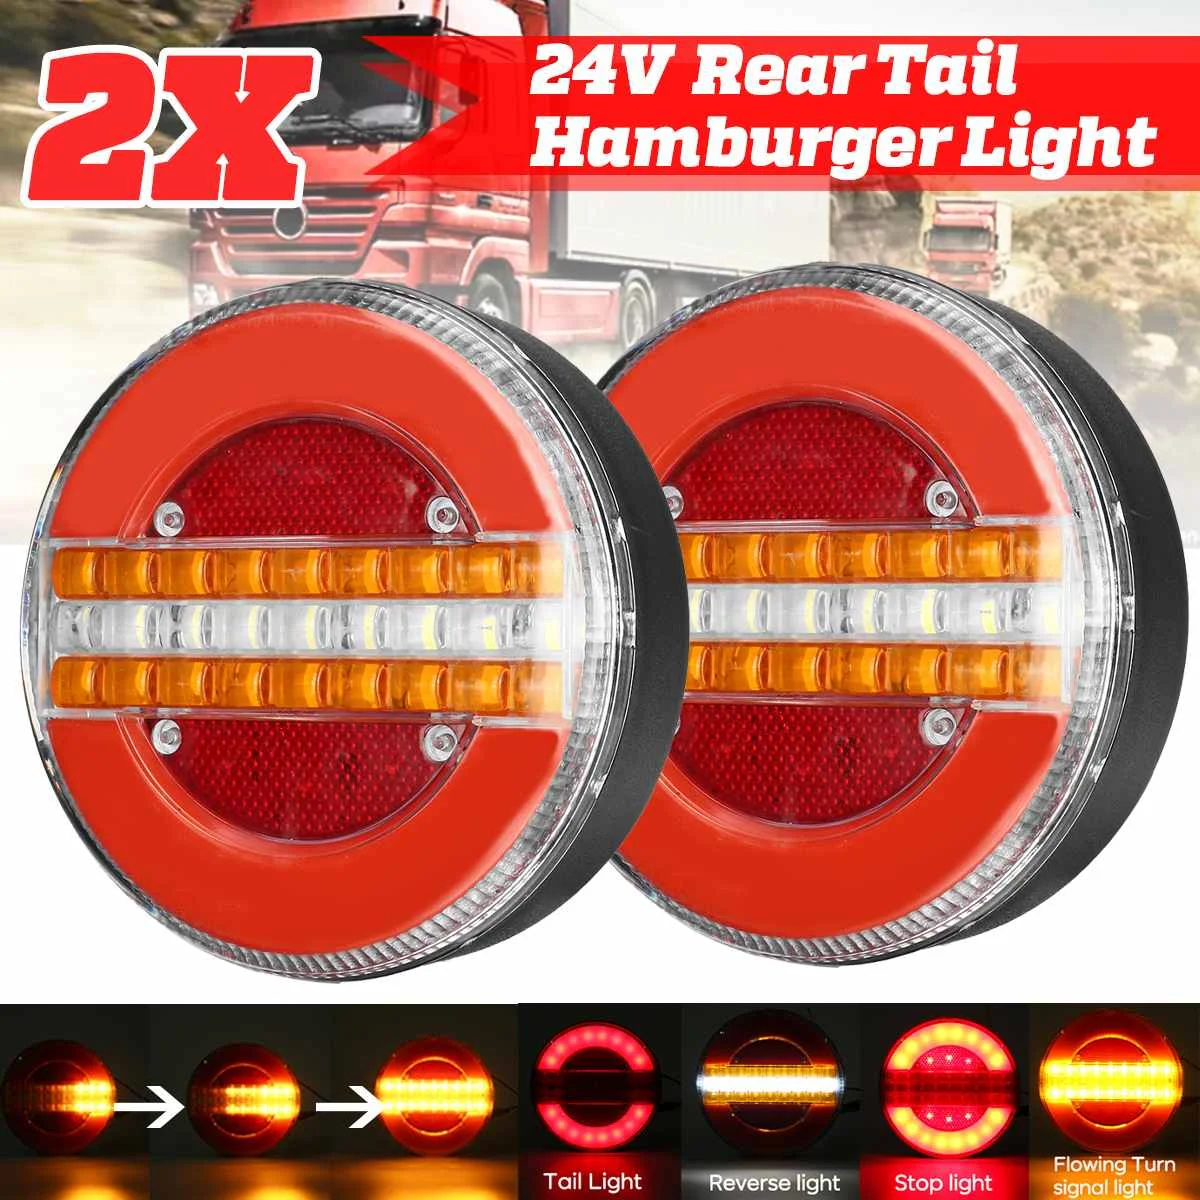 

2Pcs 24V Dynamic LED Trailer Truck Tail Light Brake Light DRL Flow Turn Signal Lamp Strobe Light for Car Boat Bus Van Caravan